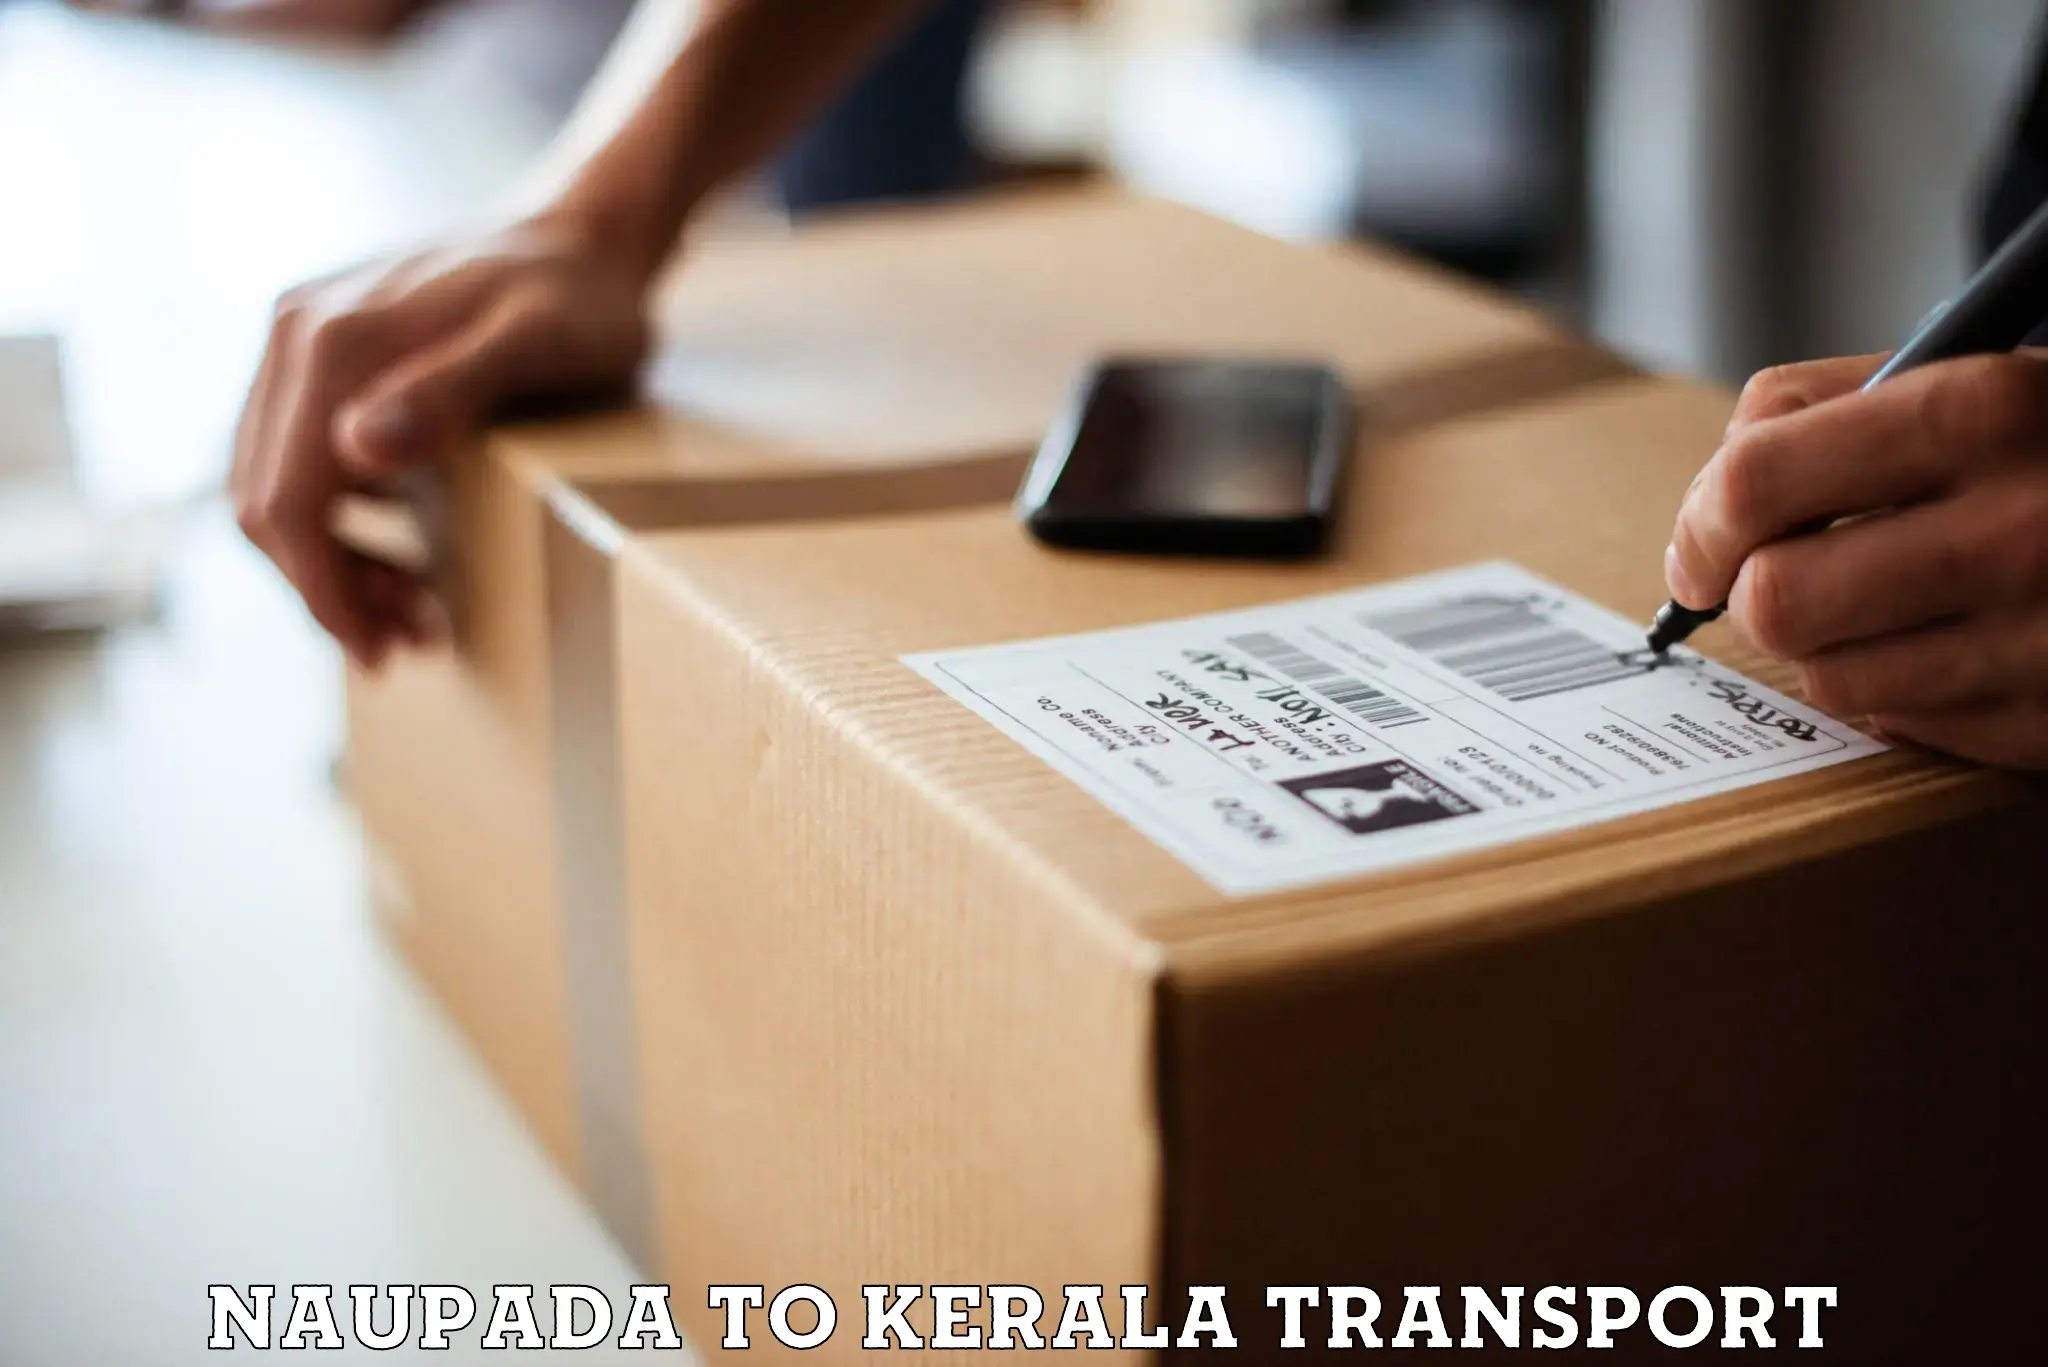 Scooty transport charges Naupada to Kakkayam